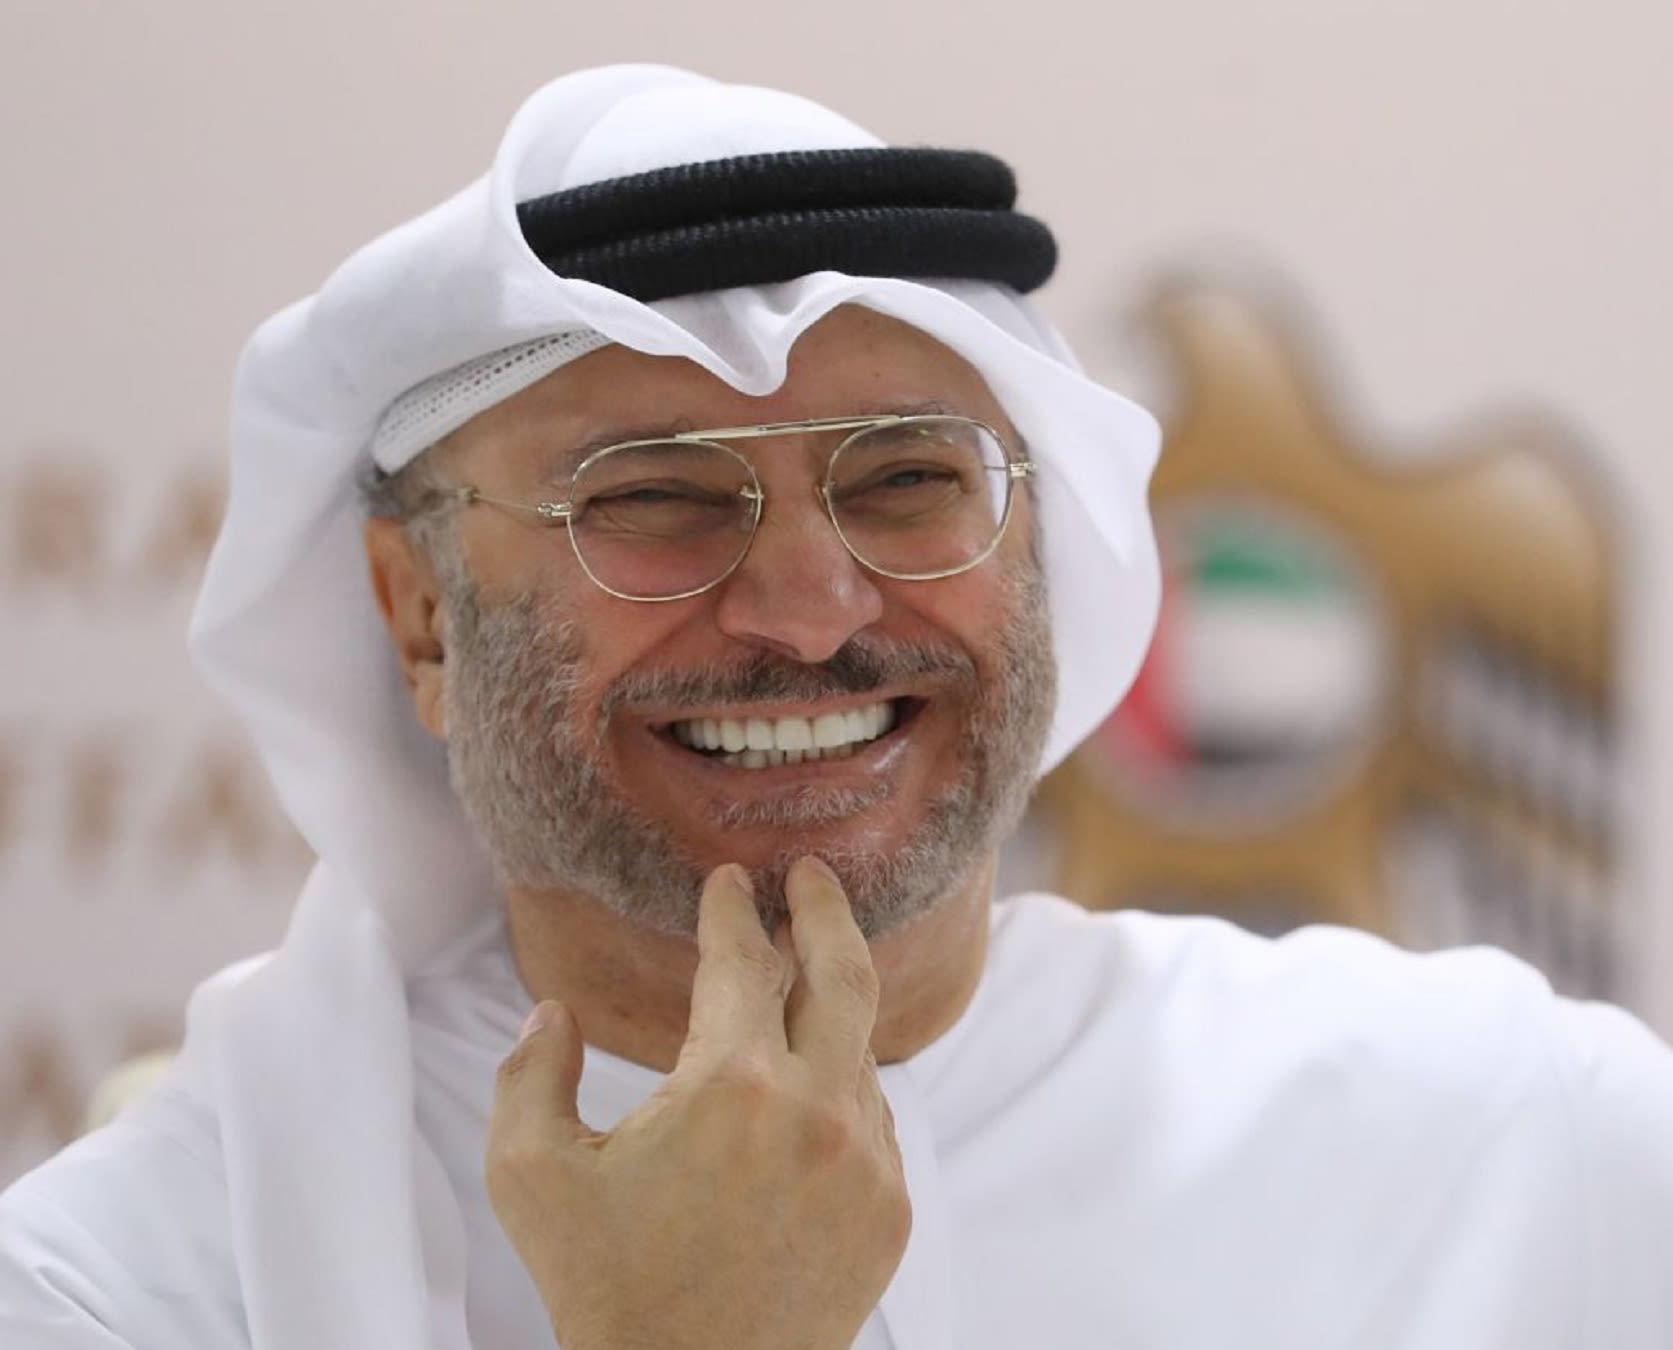 قرقاش يغرد عن أعياد الإمارات: البيت الداخلي متوحد والثقة في القيادة قوية